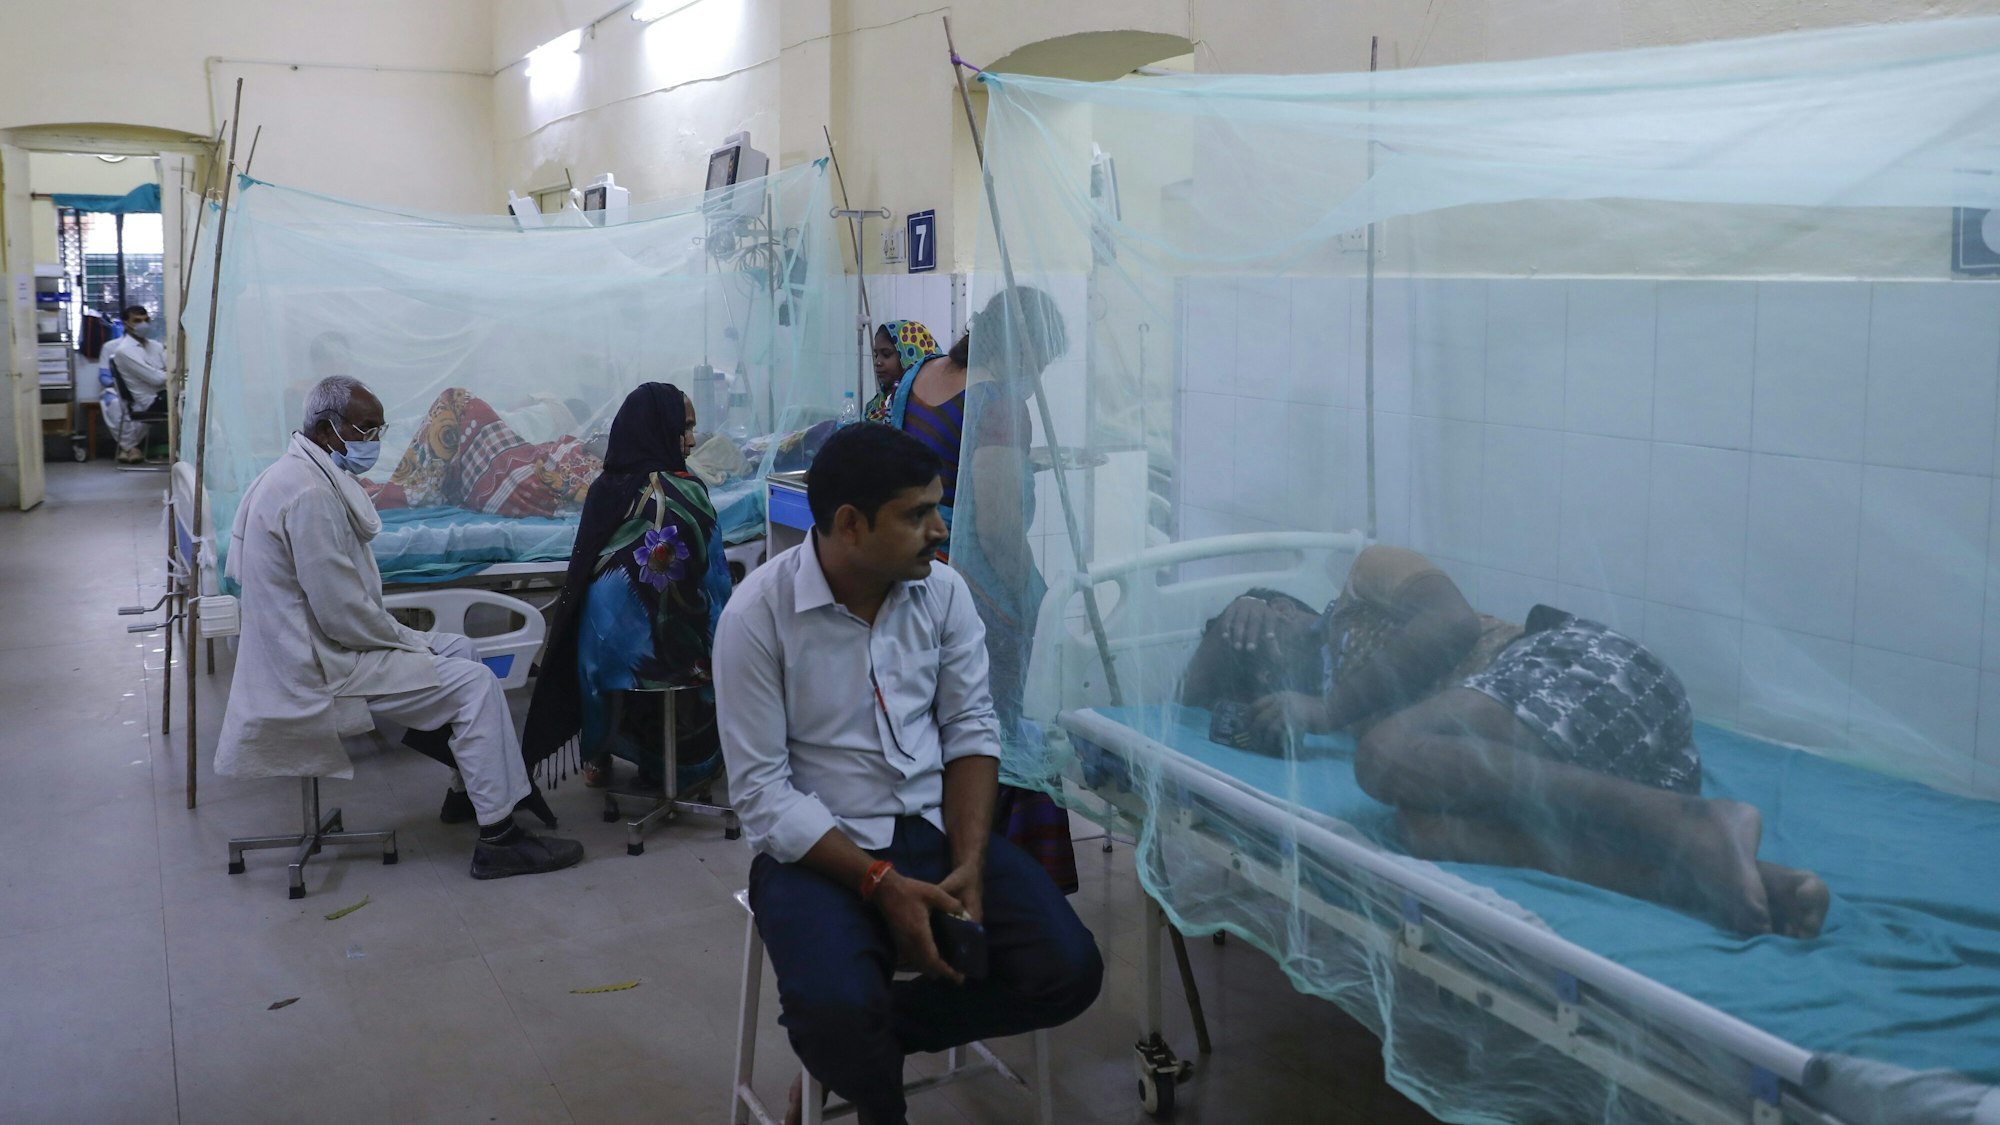 Die mit dem vom Mücken übertragenen Dengue-Fieber erkrankten Patienten liegen, von Mosquito-Netzen umhüllt, im Krankenhaus. Ärzte und Angehörige kümmern sich um die leidenden Menschen, können aber nicht viel ausrichten.